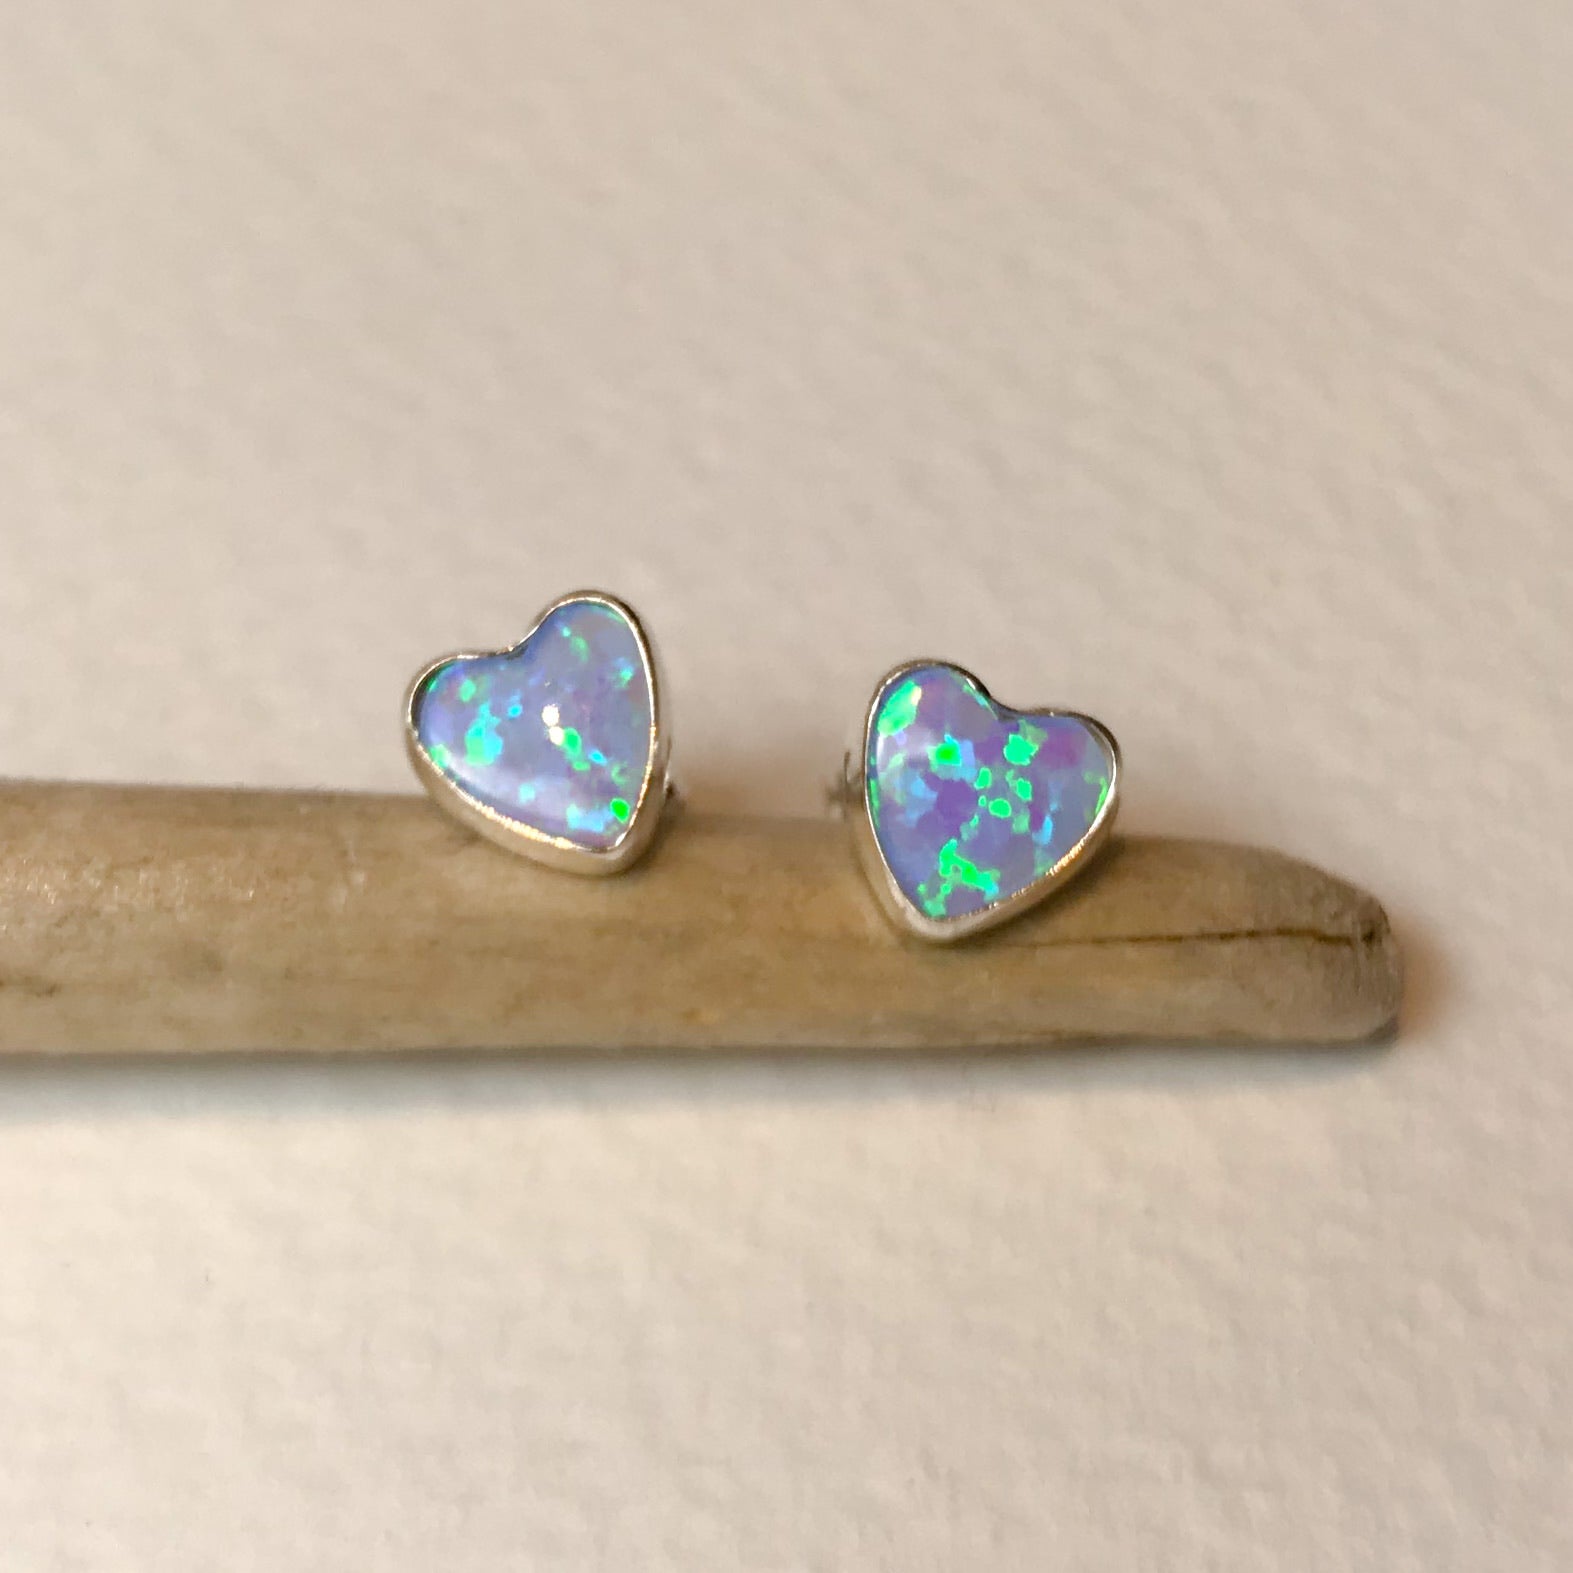 Blue Opal Heart Earrings - The Nancy Smillie Shop - Art, Jewellery & Designer Gifts Glasgow